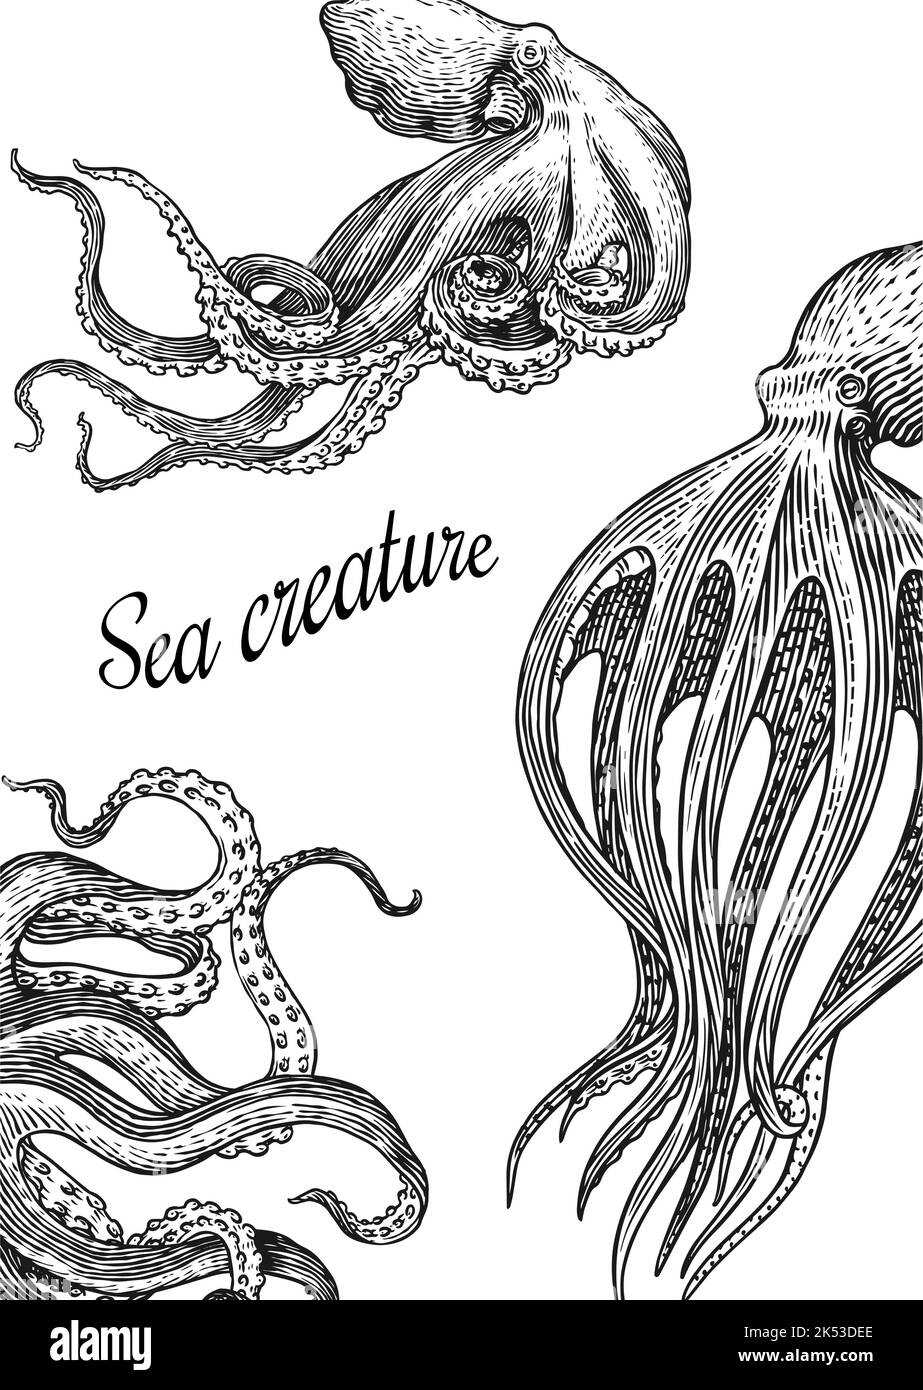 Meereskrake Hintergrund. Eingraviert von Hand gezeichnet in alter Skizze, Vintage Kreatur. Nautisch oder marine, Monster. Tier im Ozean. Vorlage für Logos Stock Vektor